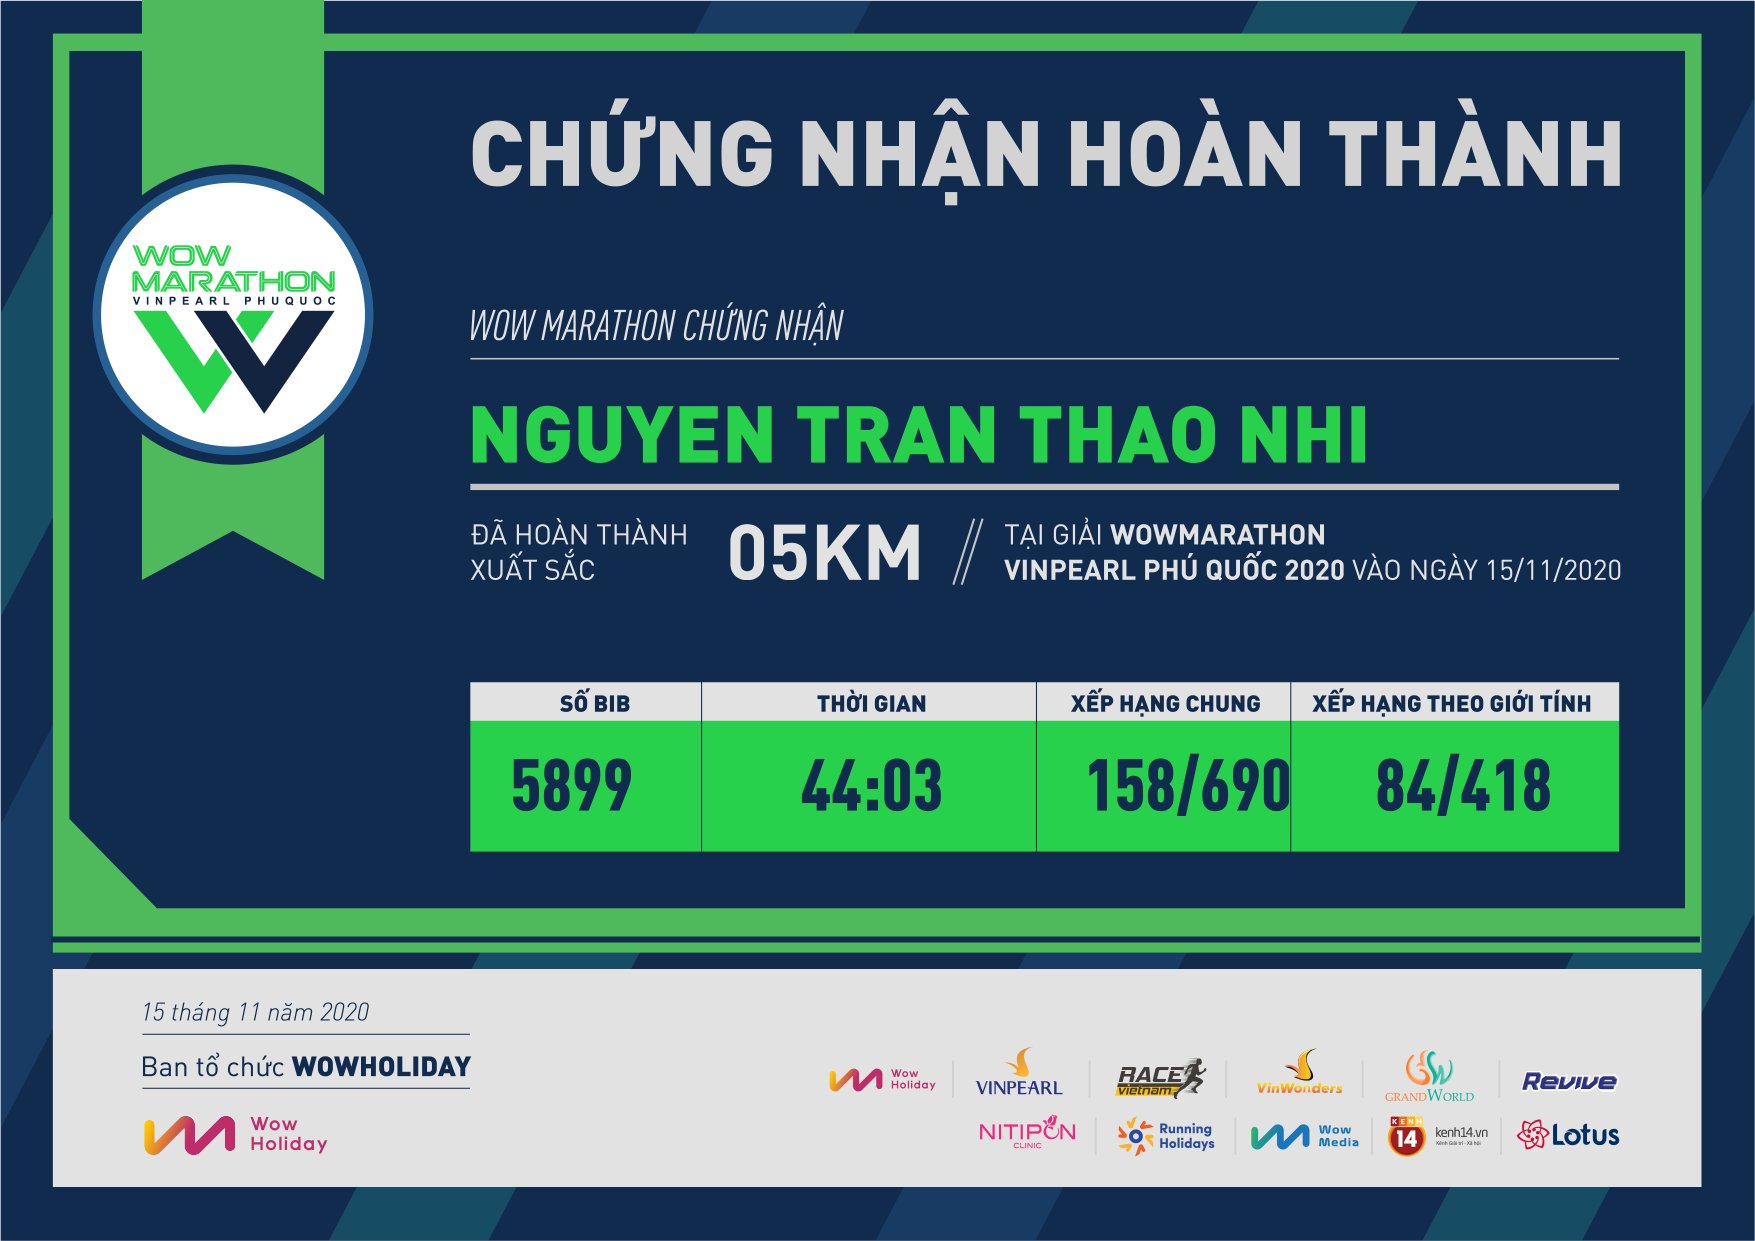 5899 - Nguyen Tran Thao Nhi